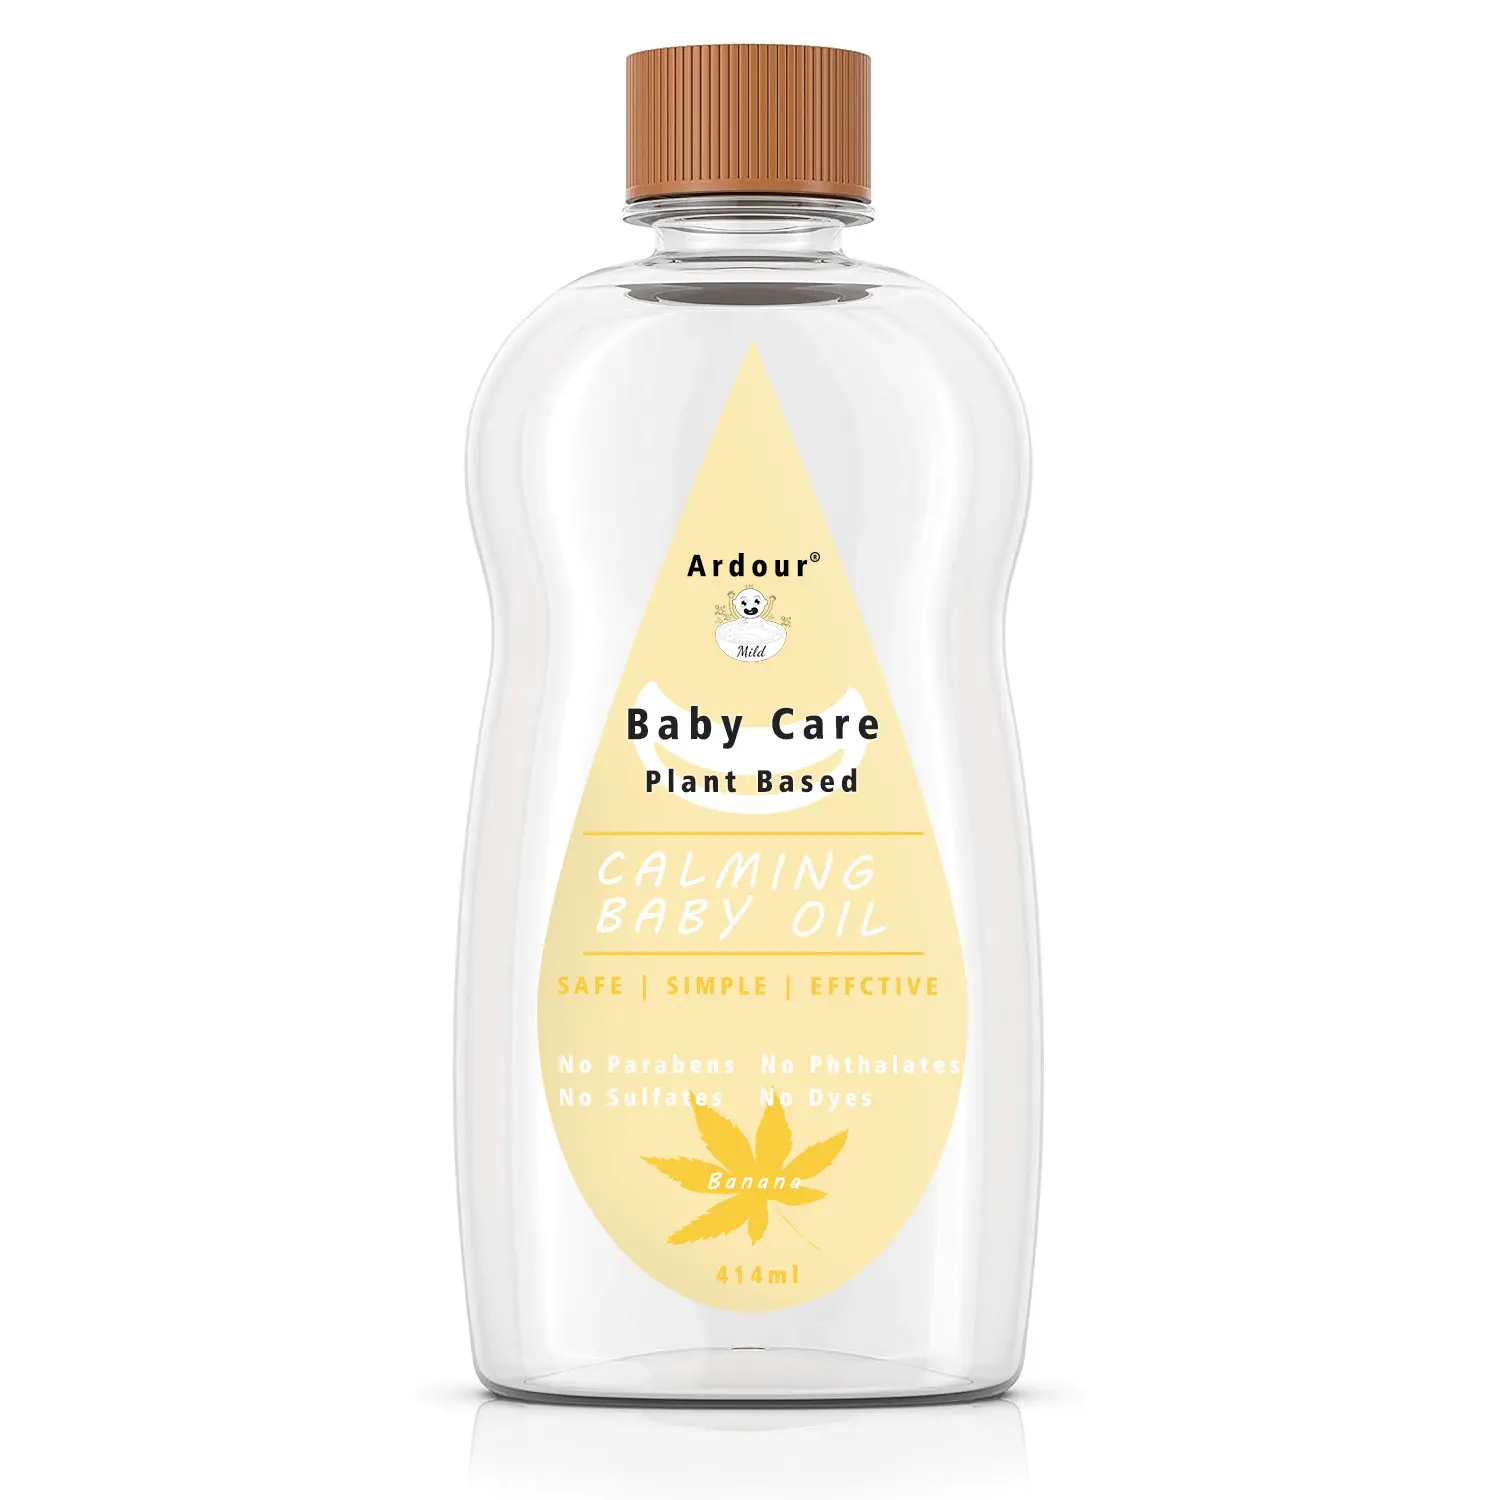 Produk perawatan bayi organik alami pisang minyak bayi untuk kulit baru lahir melembapkan bernutrisi ramah lingkungan